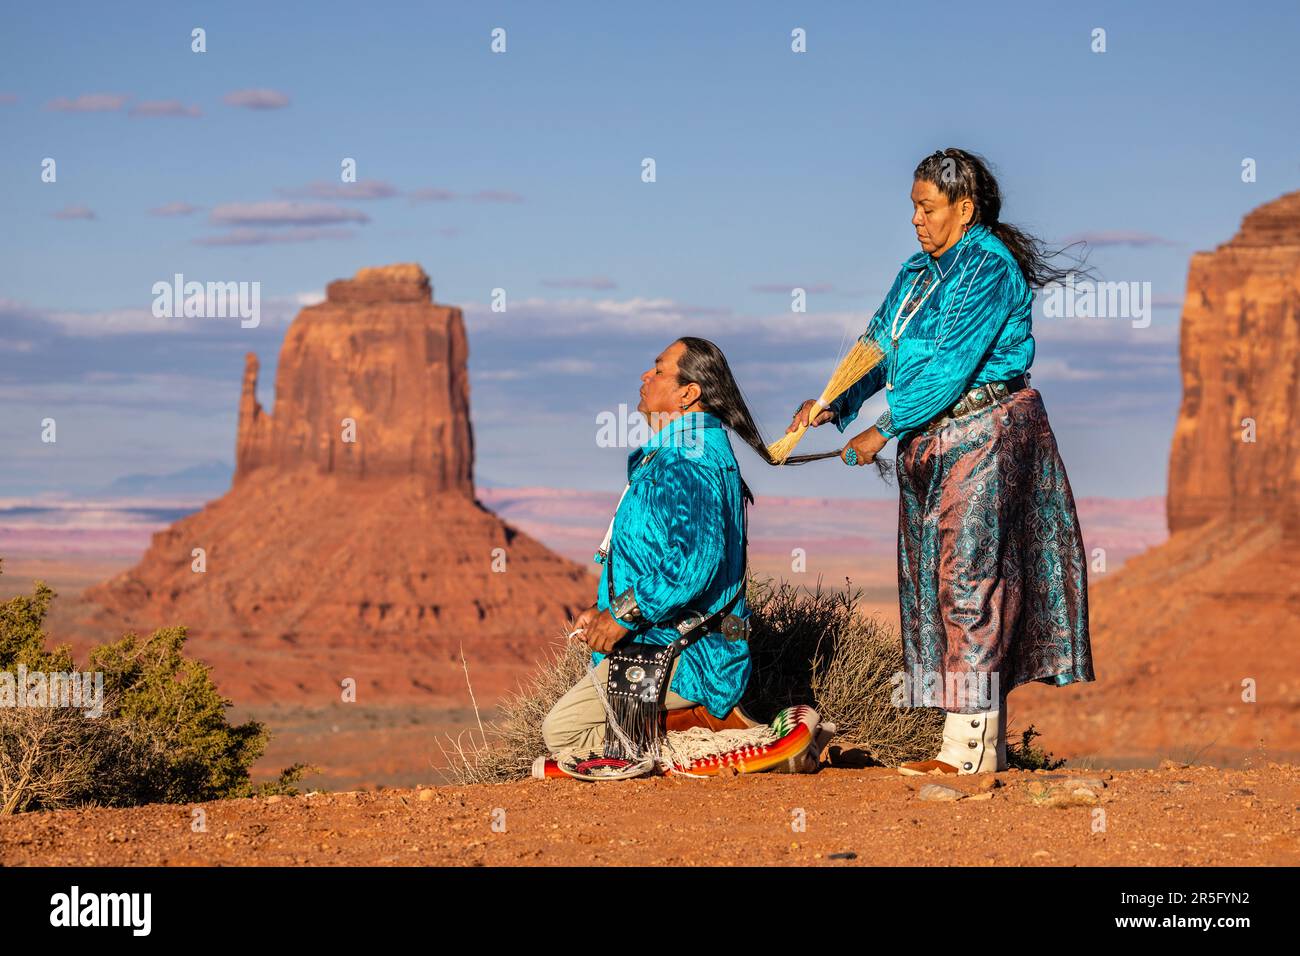 Bei Sonnenuntergang im Monument Valley Navajo Tribal Park, Arizona, USA, wird das Haarkämmerritual der amerikanischen Navajo durchgeführt Stockfoto